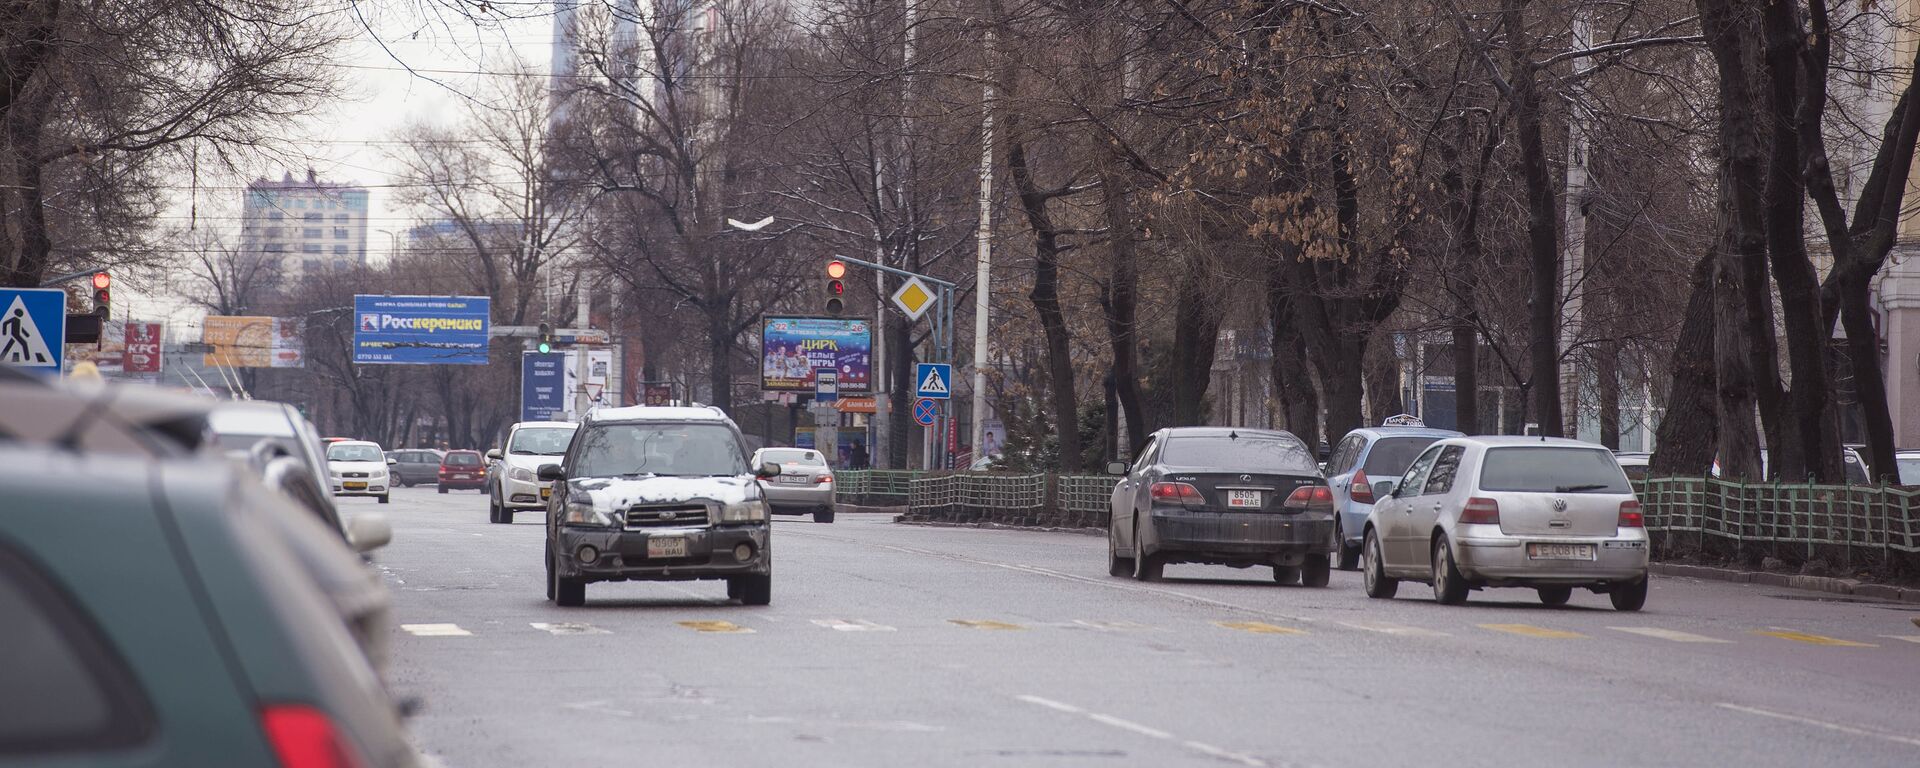 Автомобили на одной из улиц Бишкека. Архивное фото - Sputnik Кыргызстан, 1920, 19.11.2020